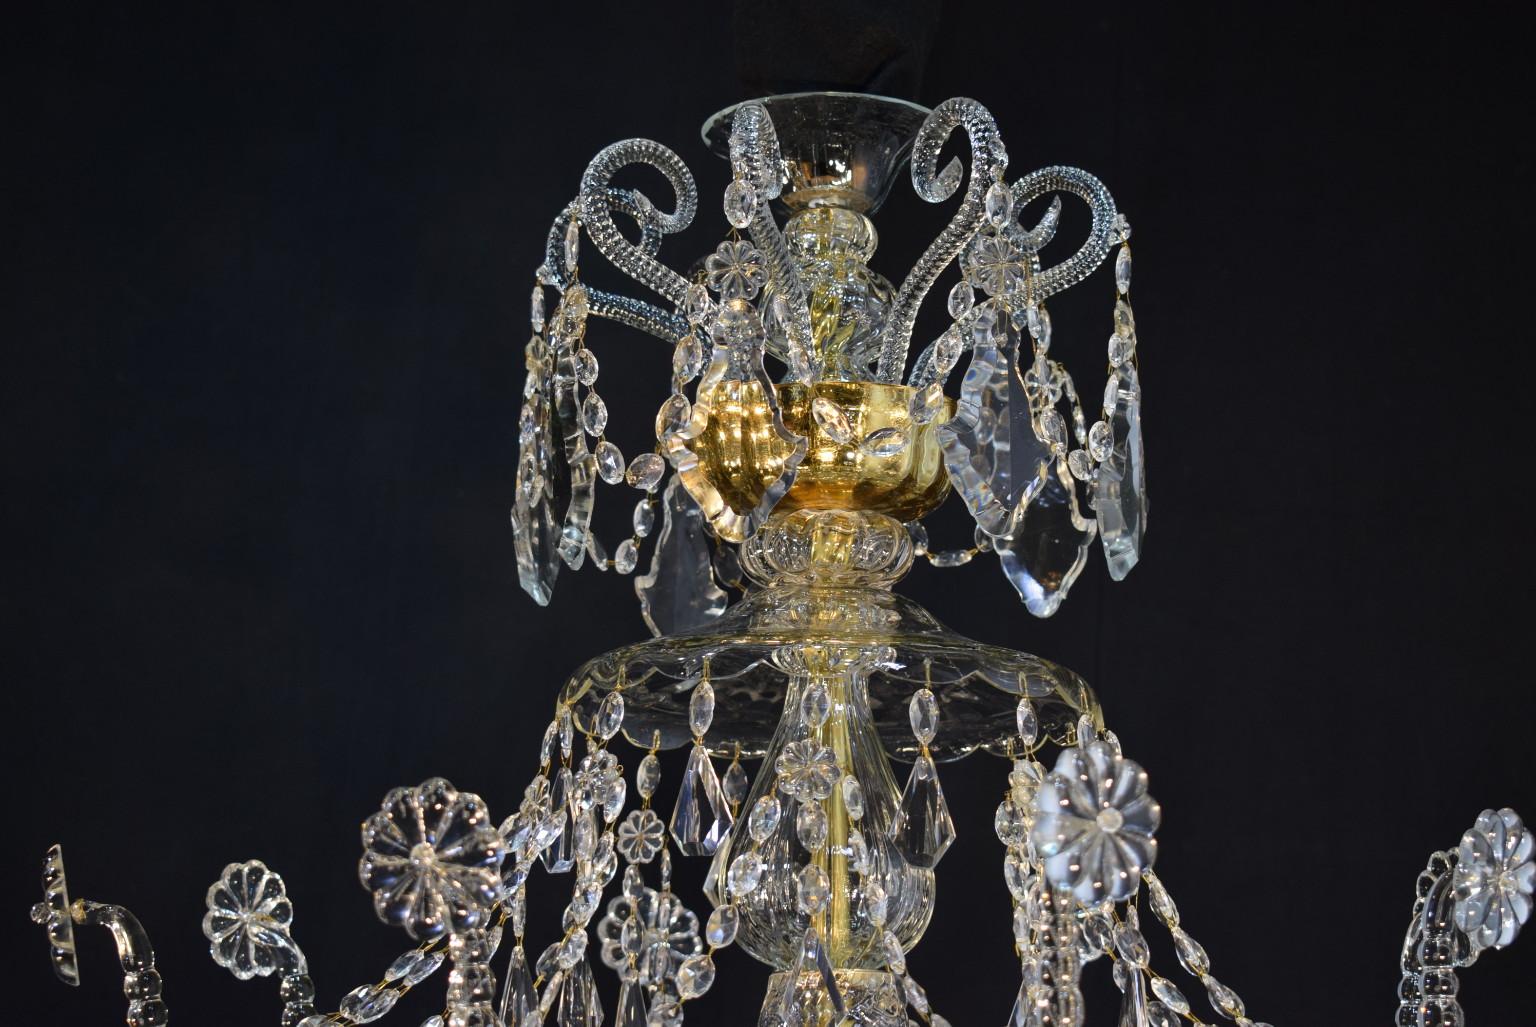 Hervorragender achtflammiger venezianischer Kronleuchter aus dem 19. Jahrhundert, ursprünglich für Kerzen, jetzt elektrifiziert.
CW4541
 